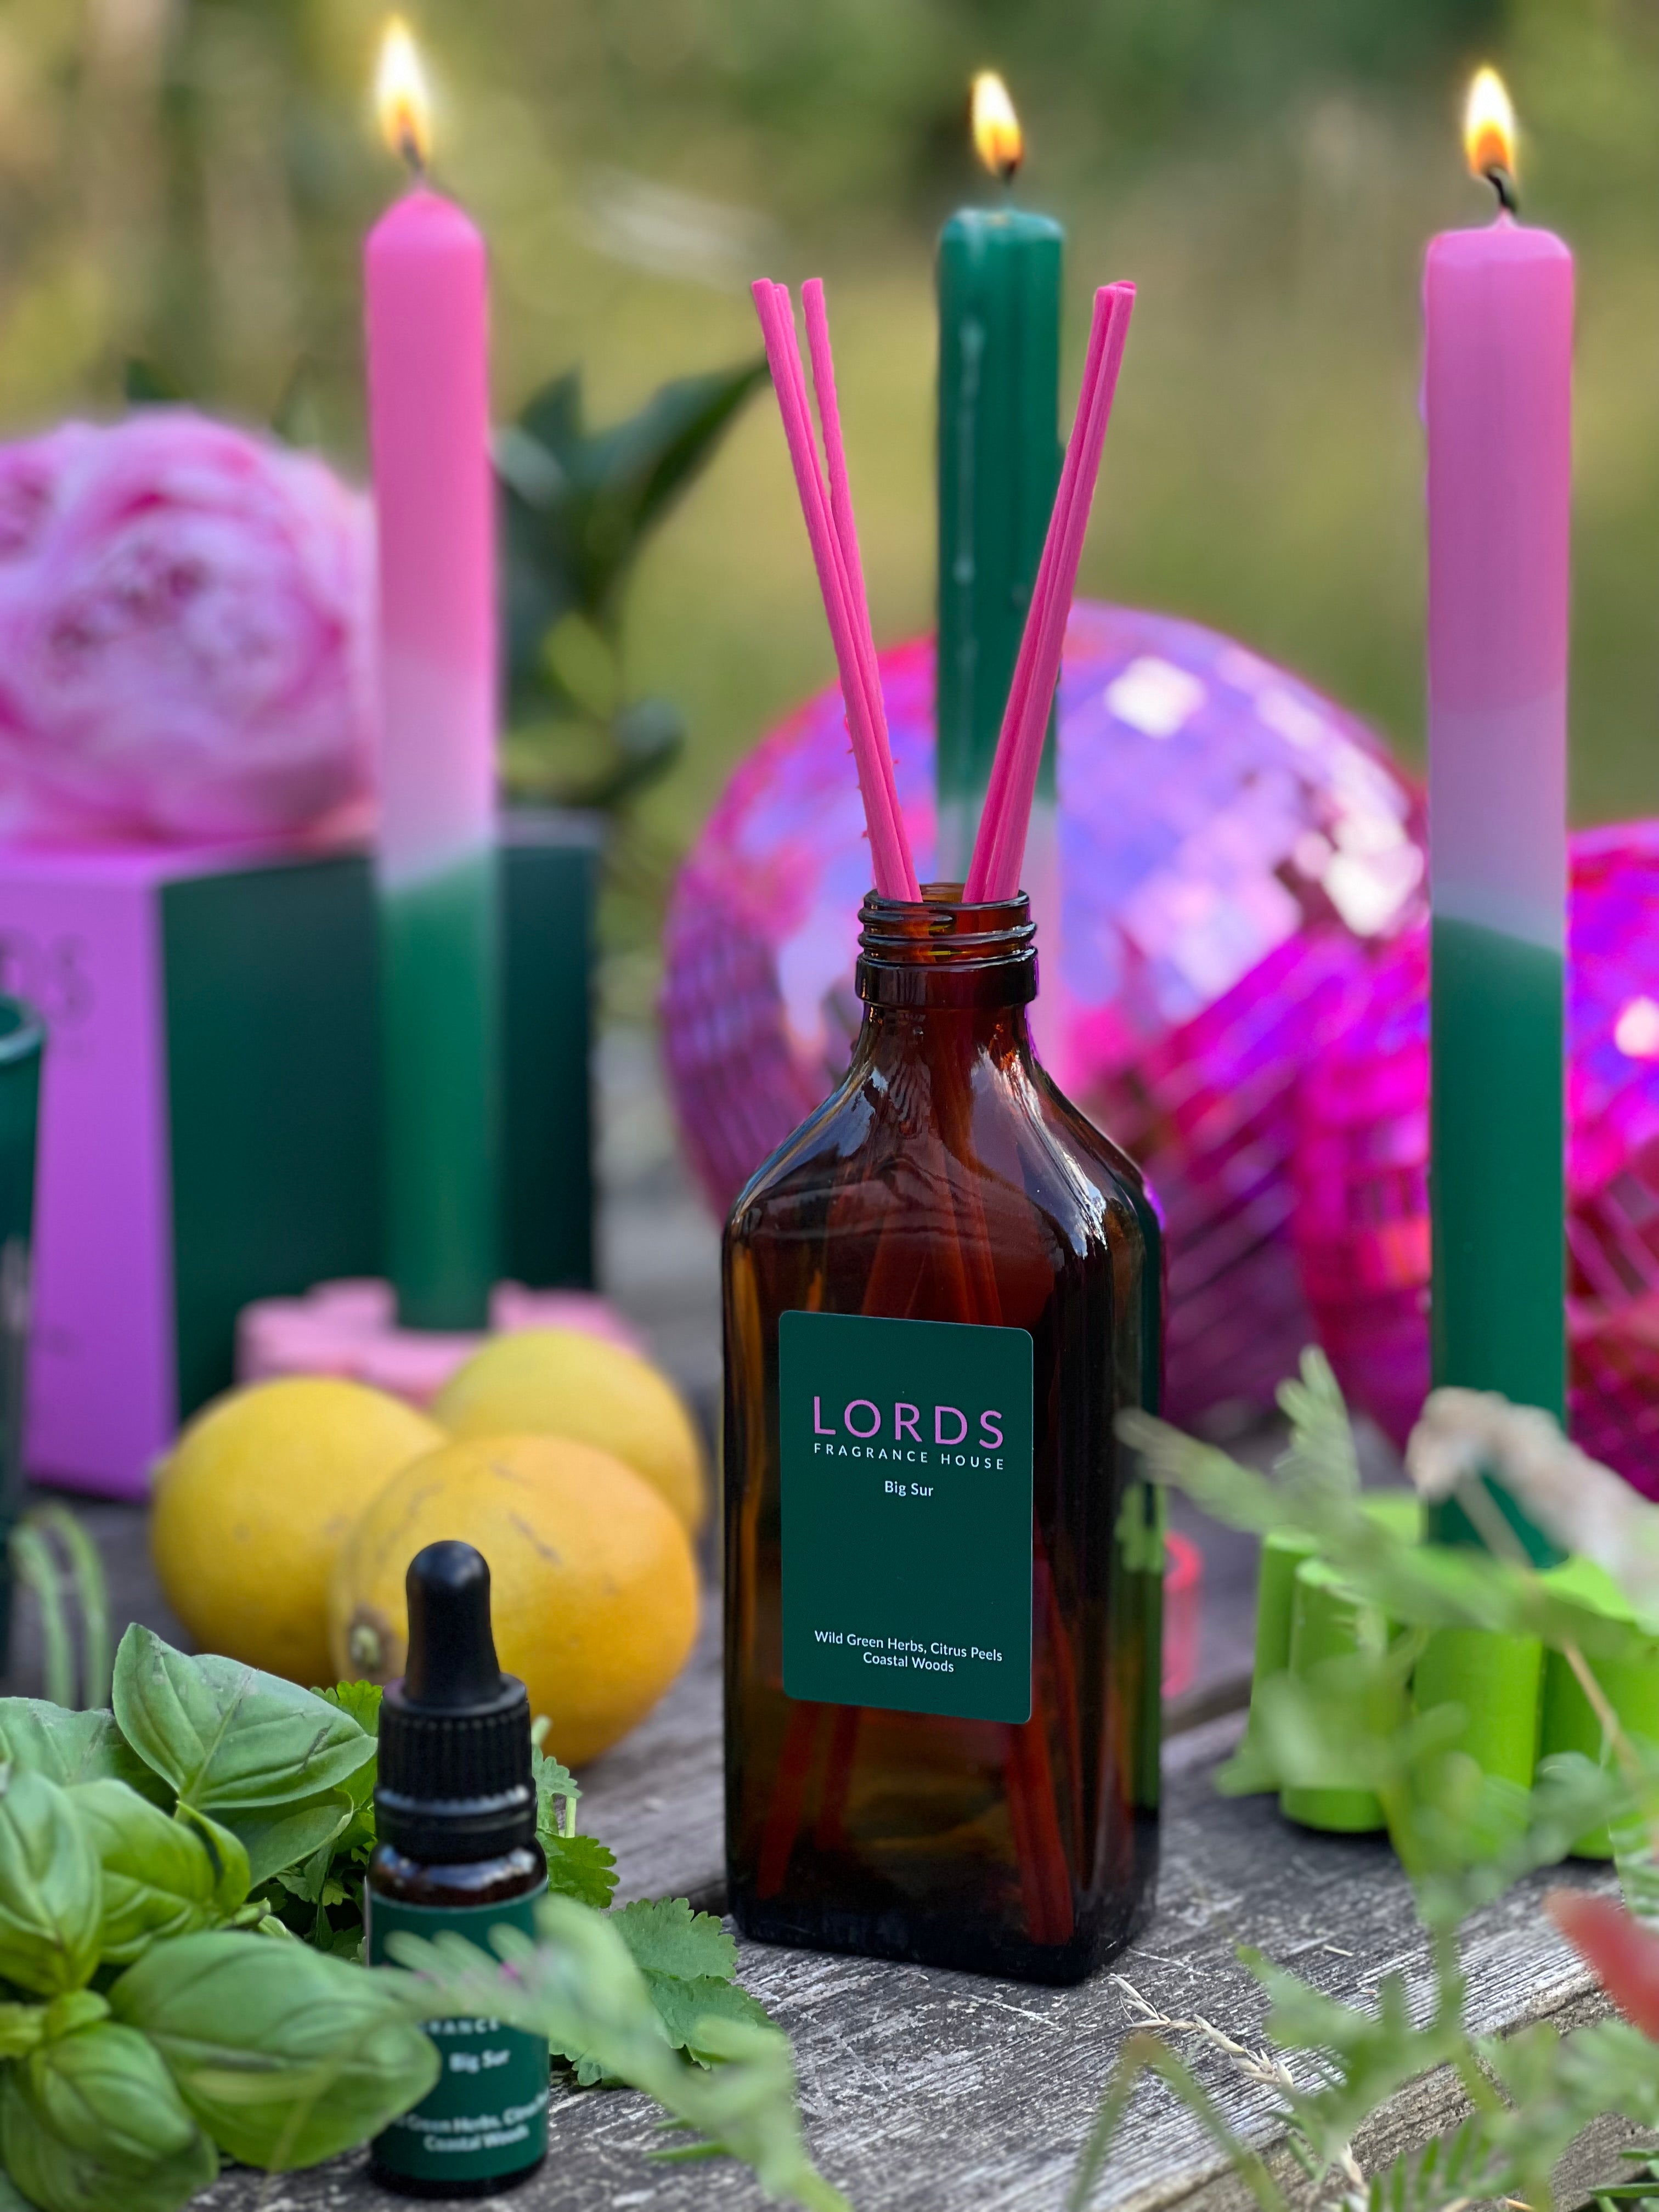 Big Sur reed diffuser, brown bottle, pink sticks, green label 